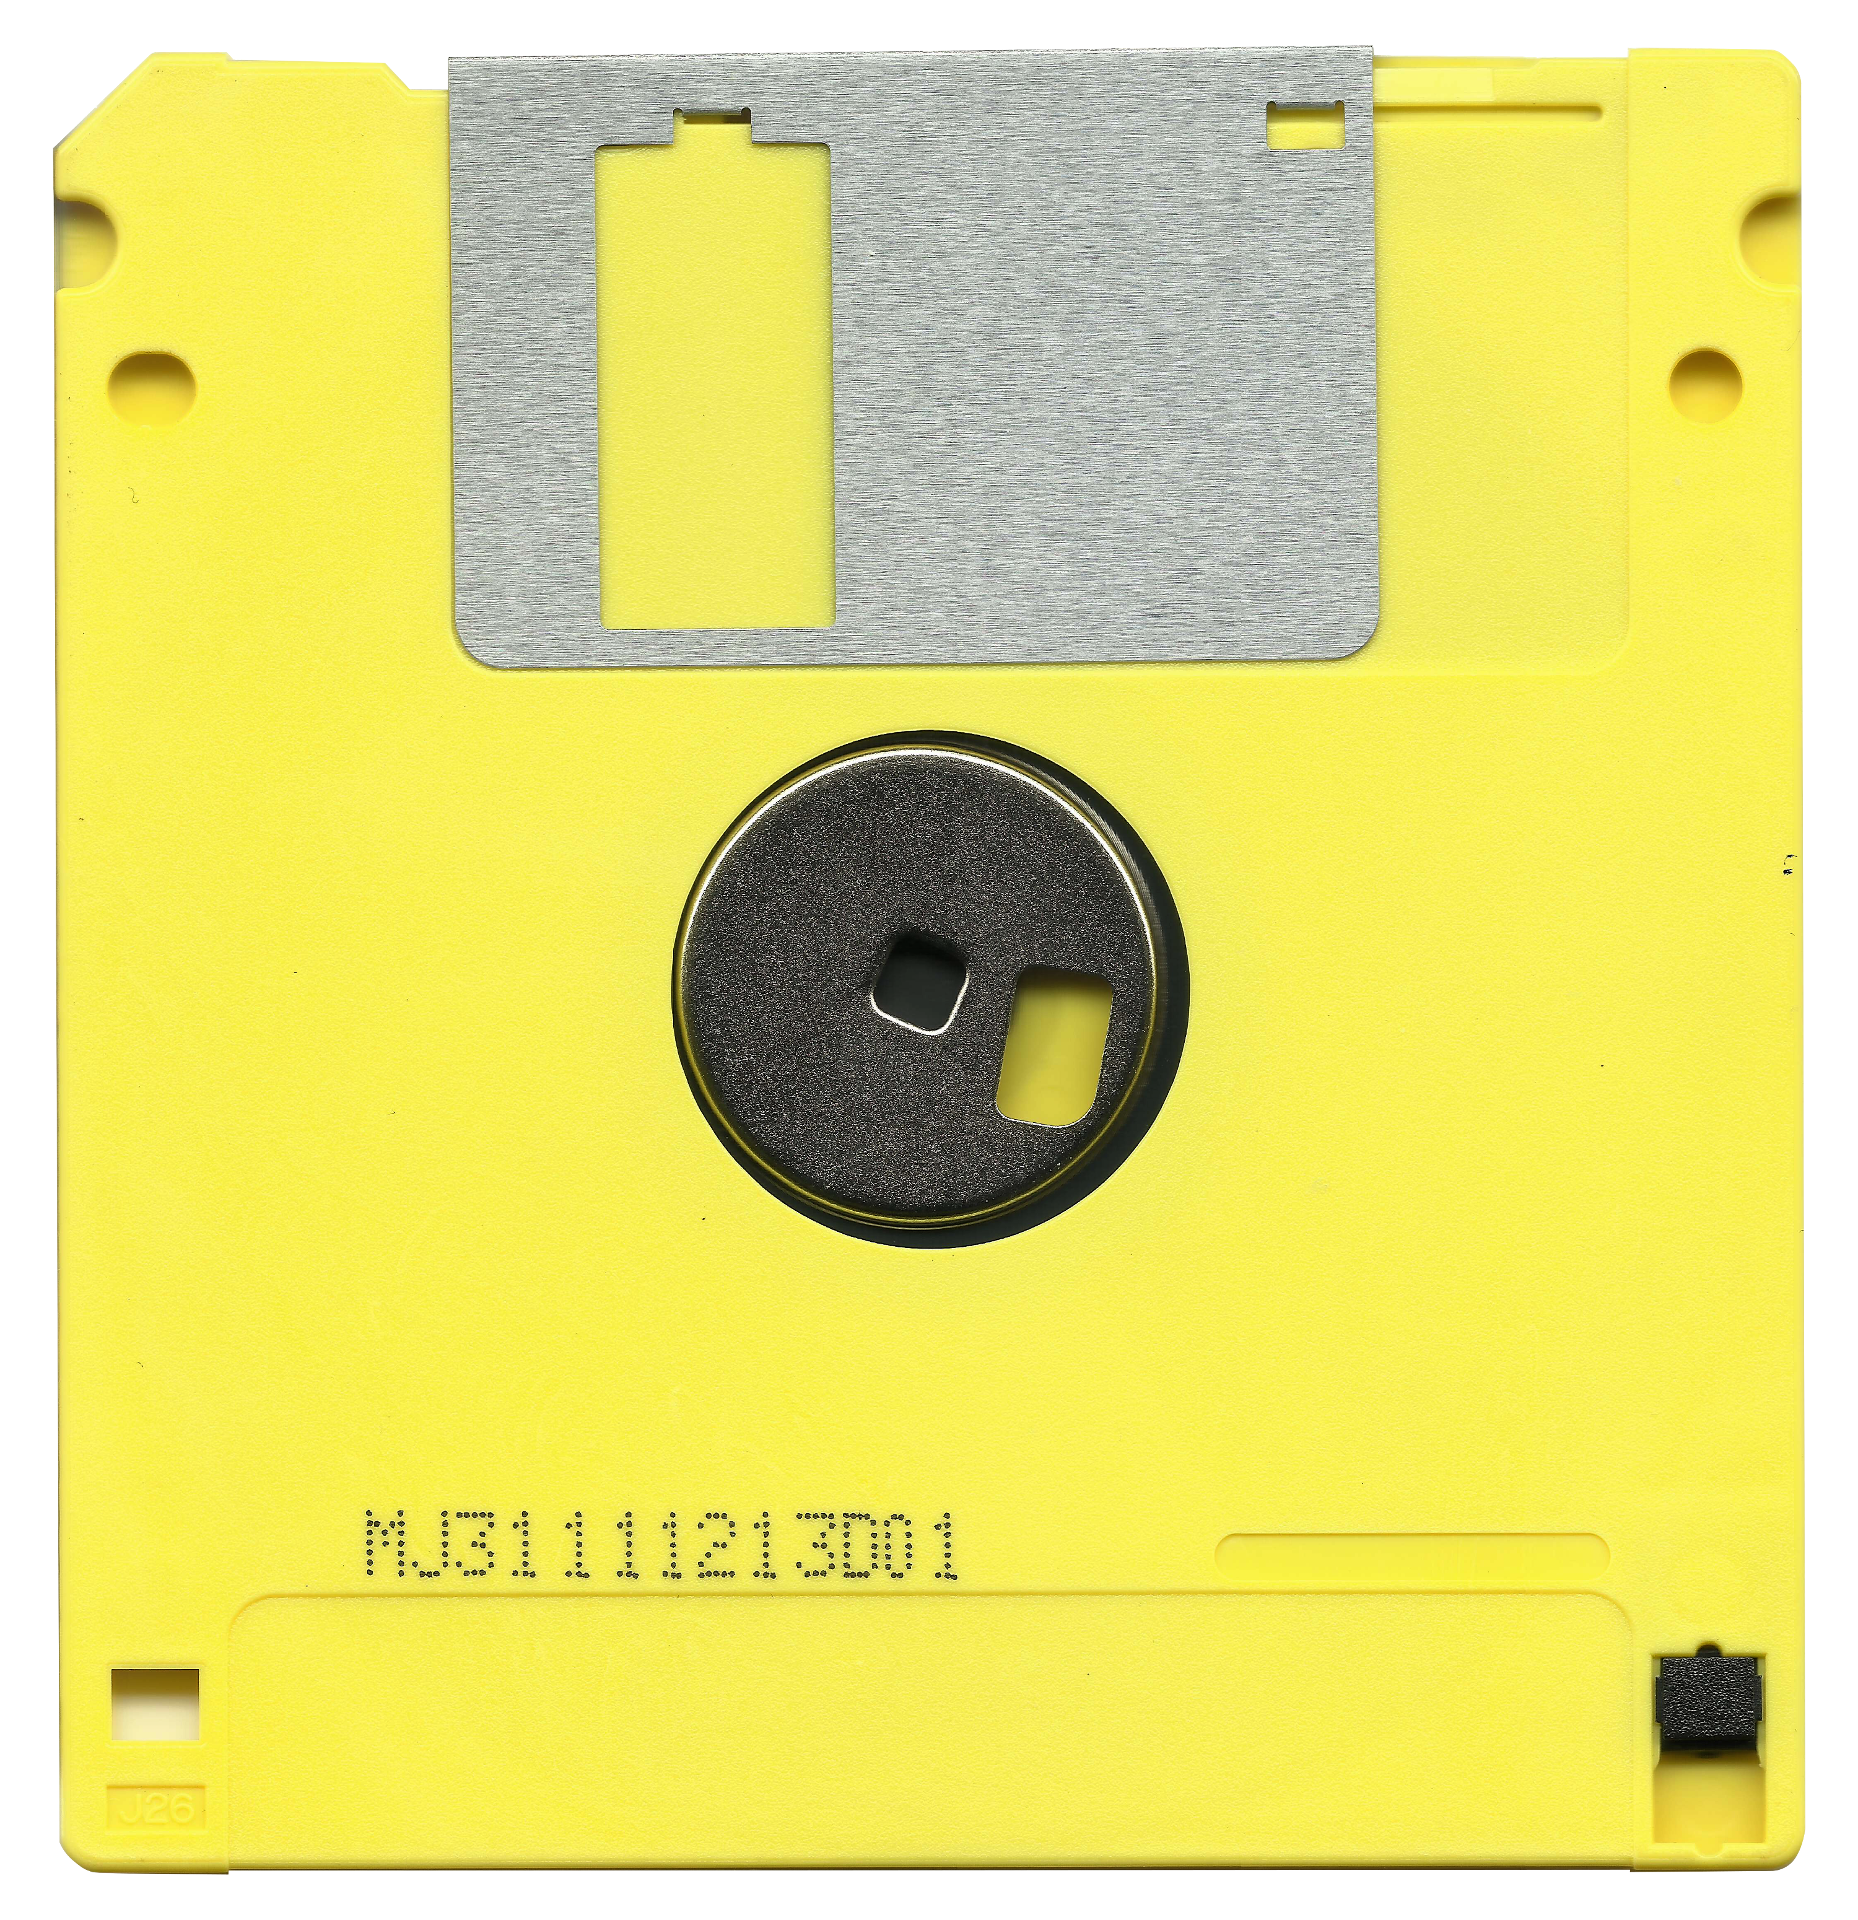 Un disquete，¿es retro, moderno o viejuno?